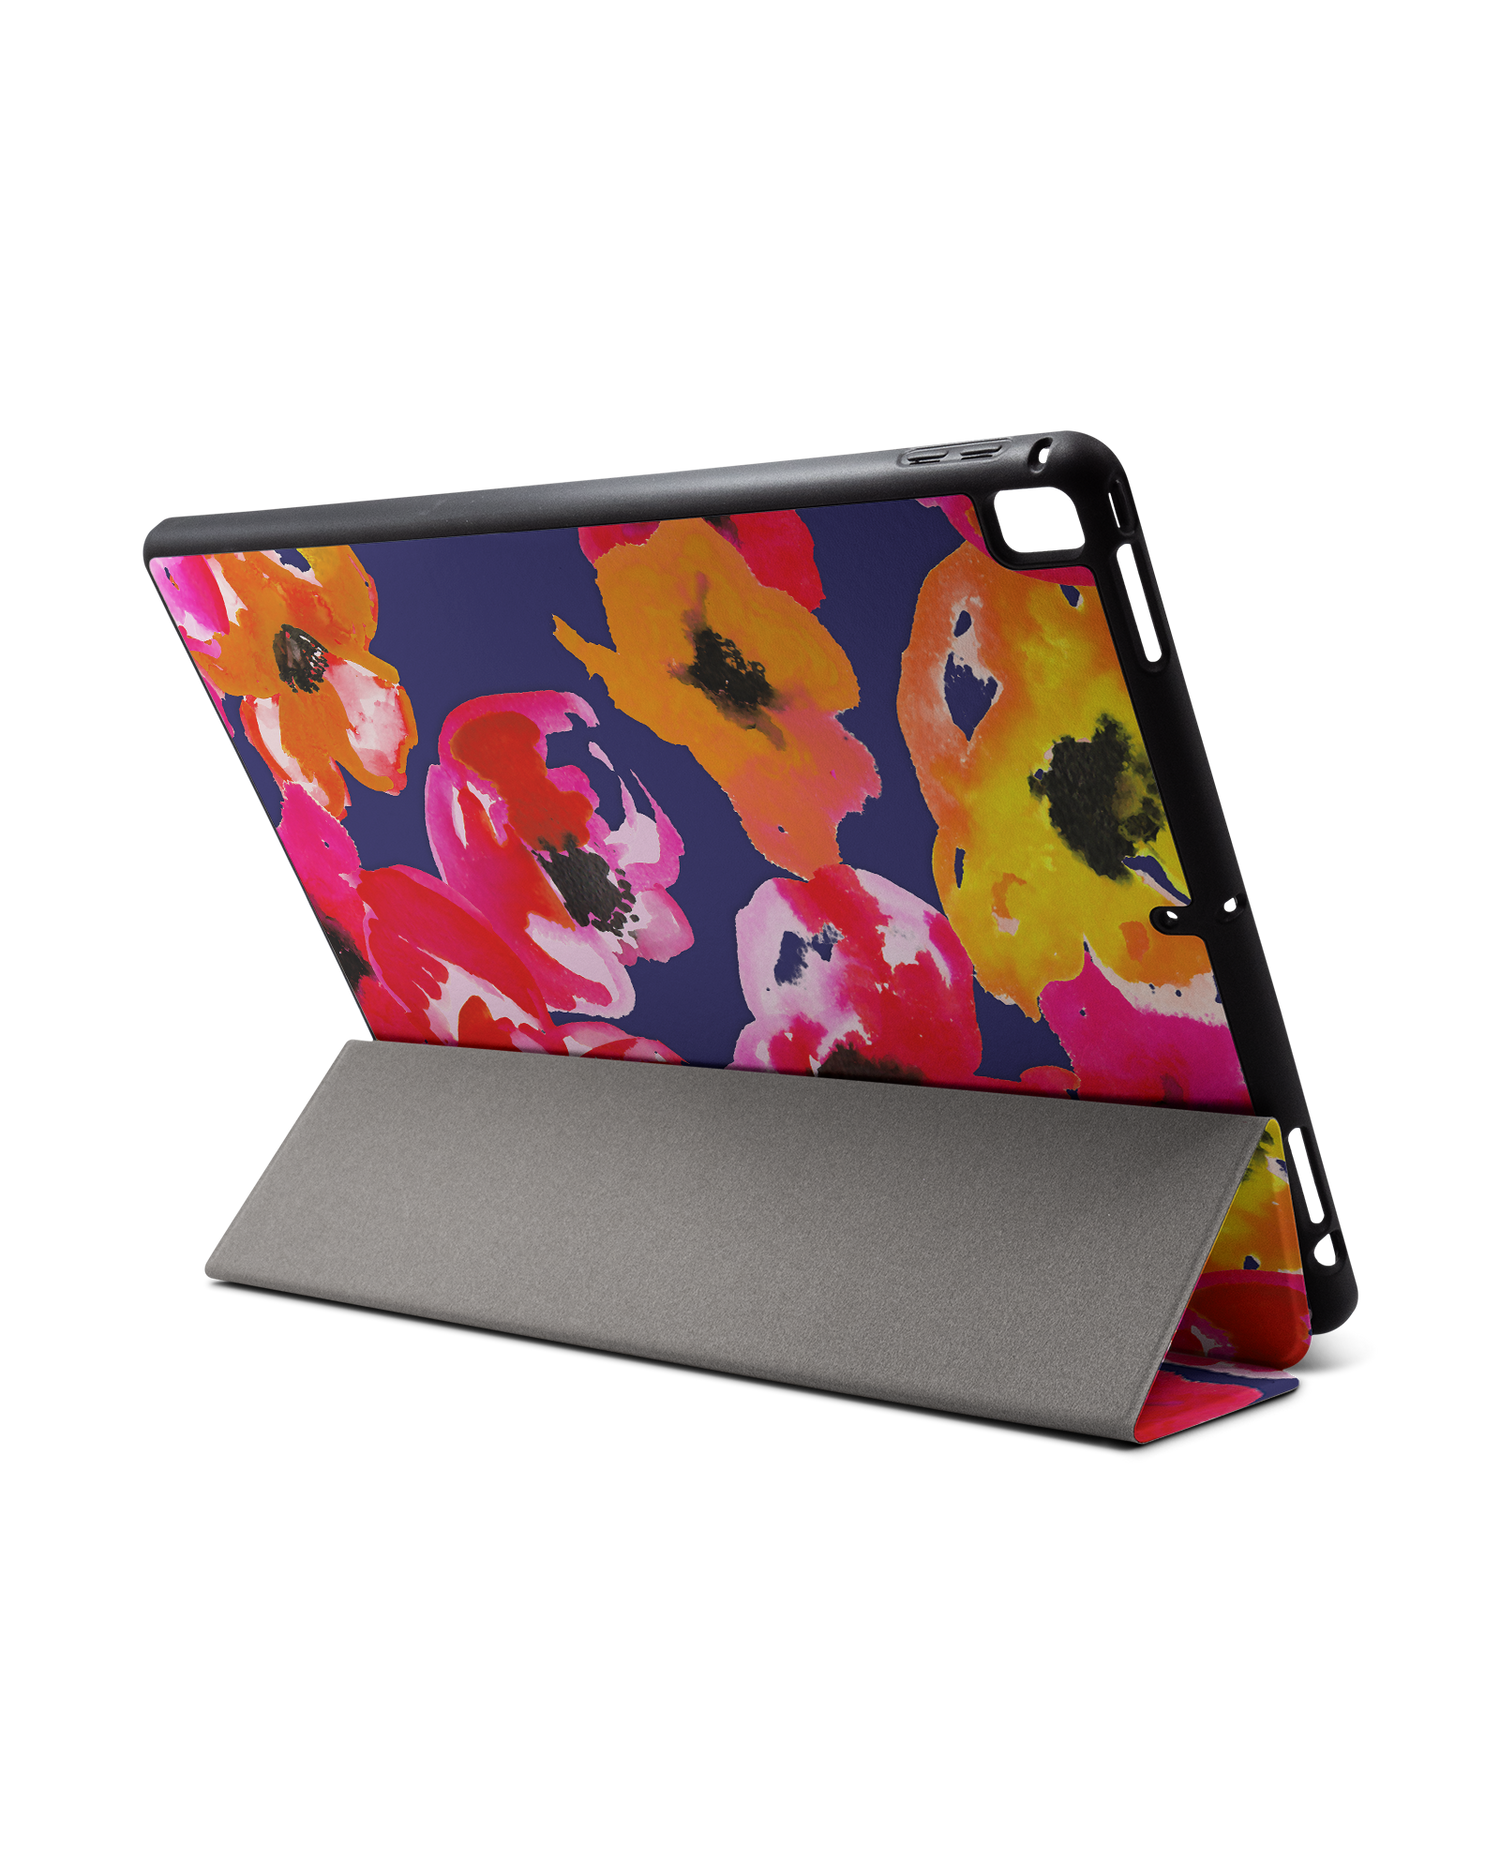 Painted Poppies iPad Hülle mit Stifthalter für Apple iPad Pro 2 12.9'' (2017): Aufgestellt im Querformat von hinten